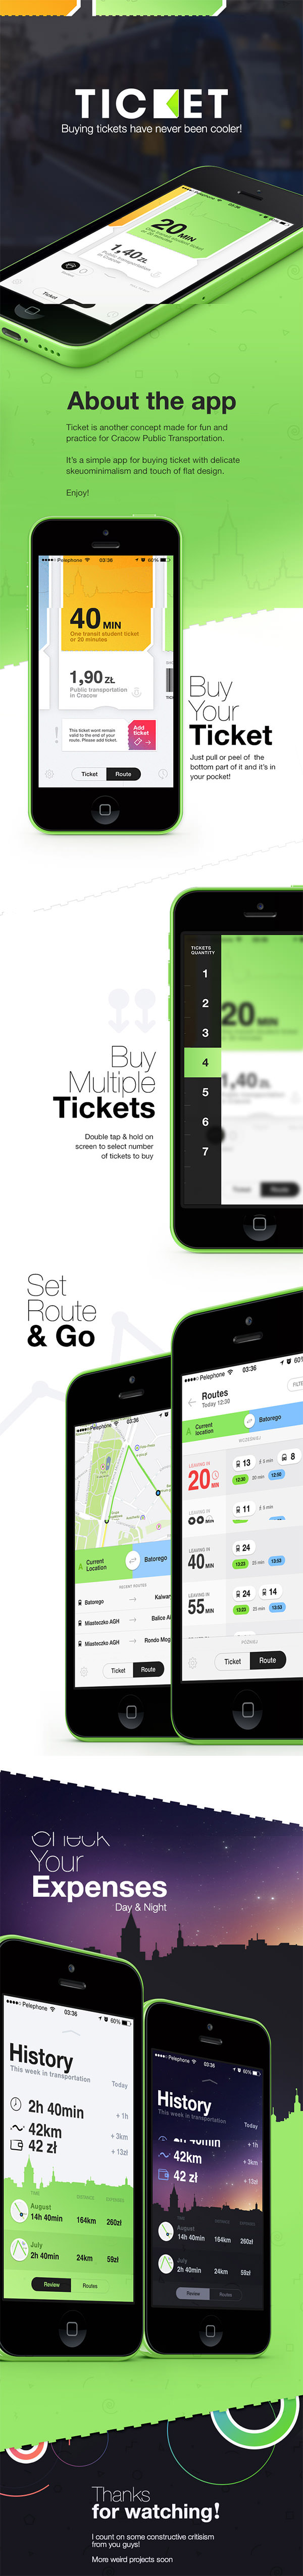 ticket-app-ui-design